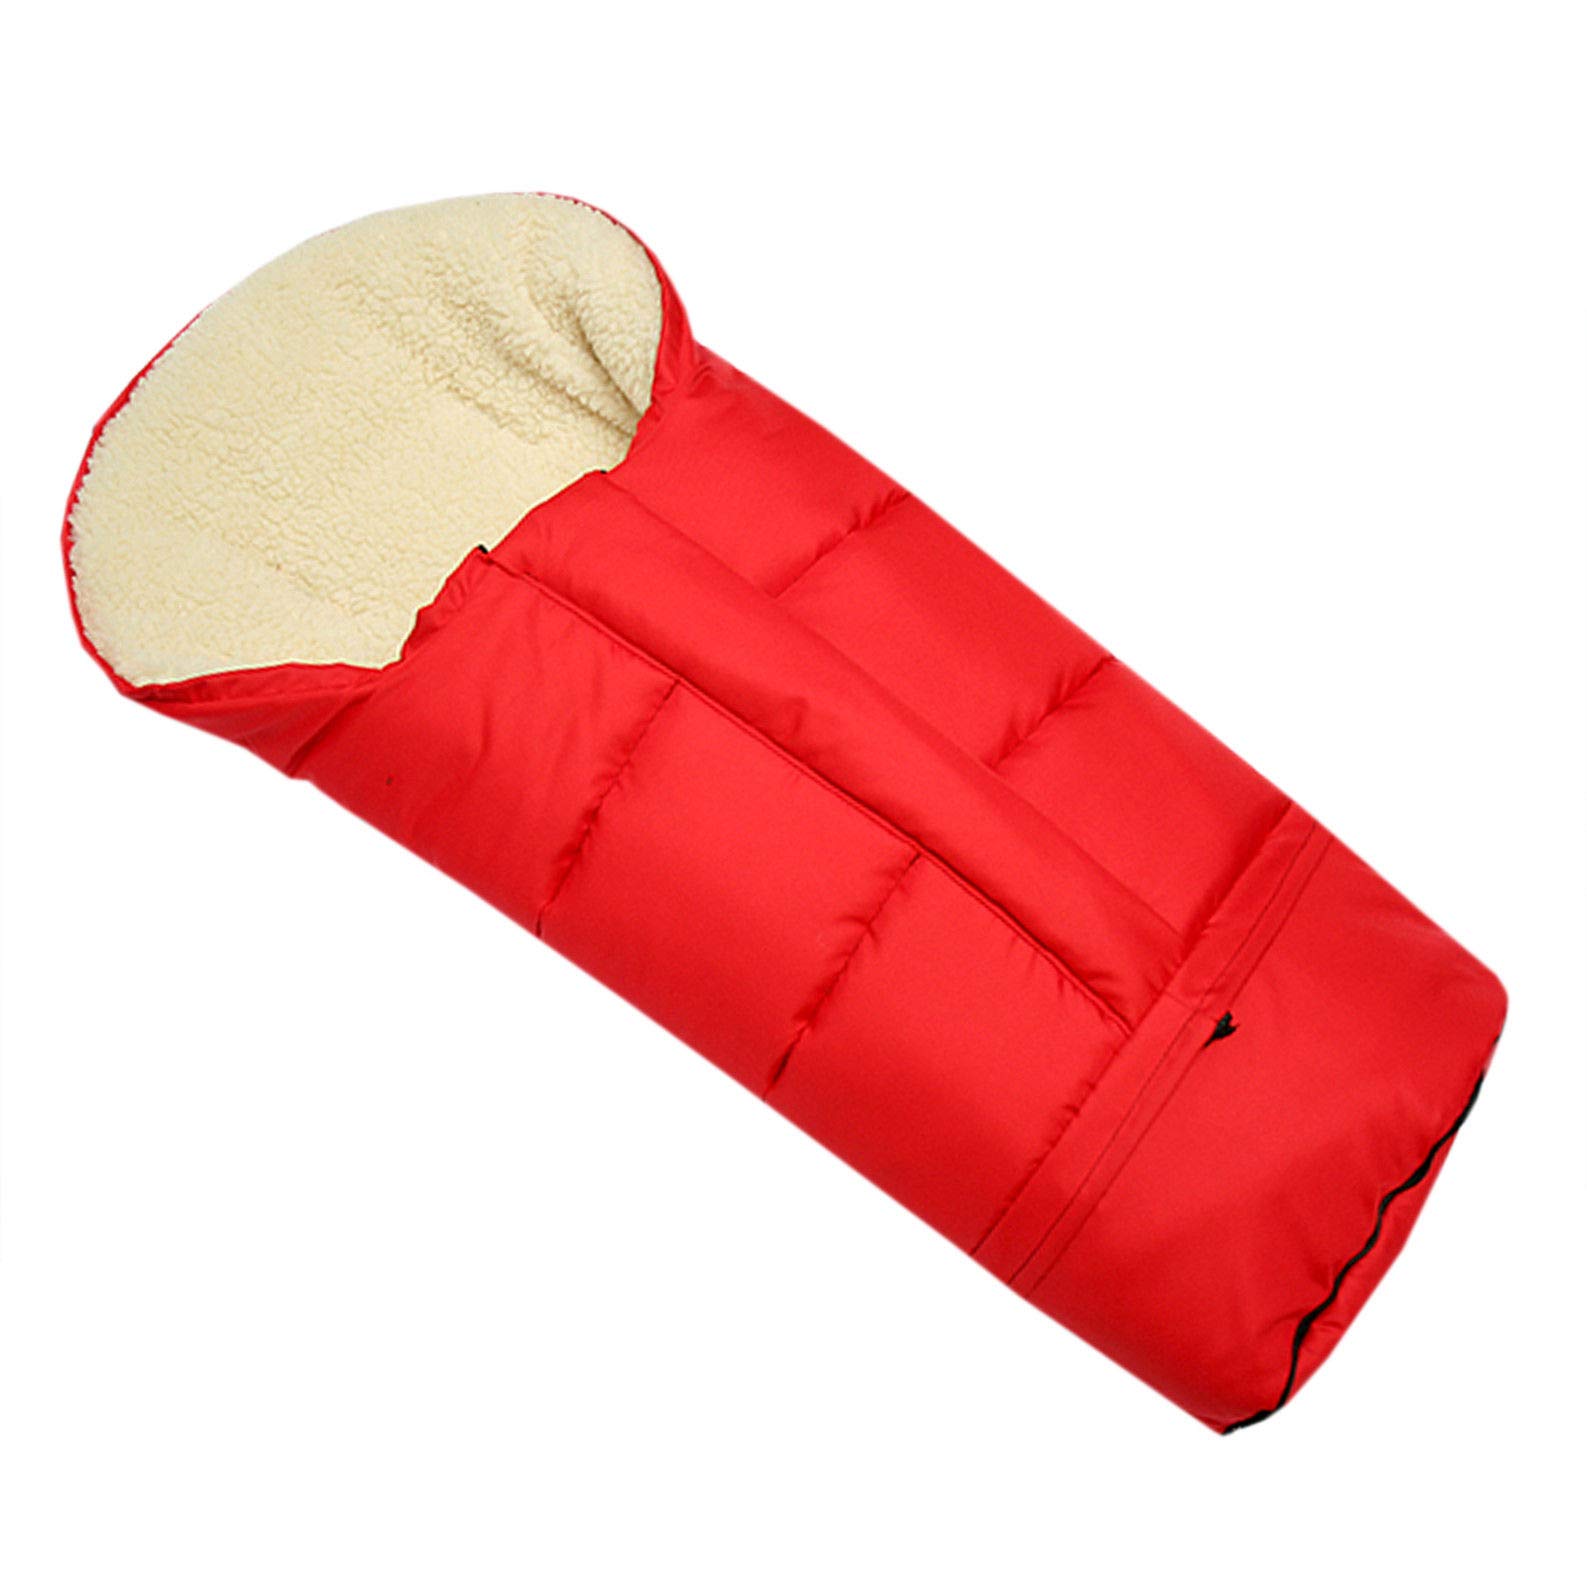 BAMBINIWELT Winterfußsack Fußsack für Kinderwagen, Buggy oder Schlitten, in Mumienform, aus Wolle, Größe anpassbar, MUMIE UNI (rot)